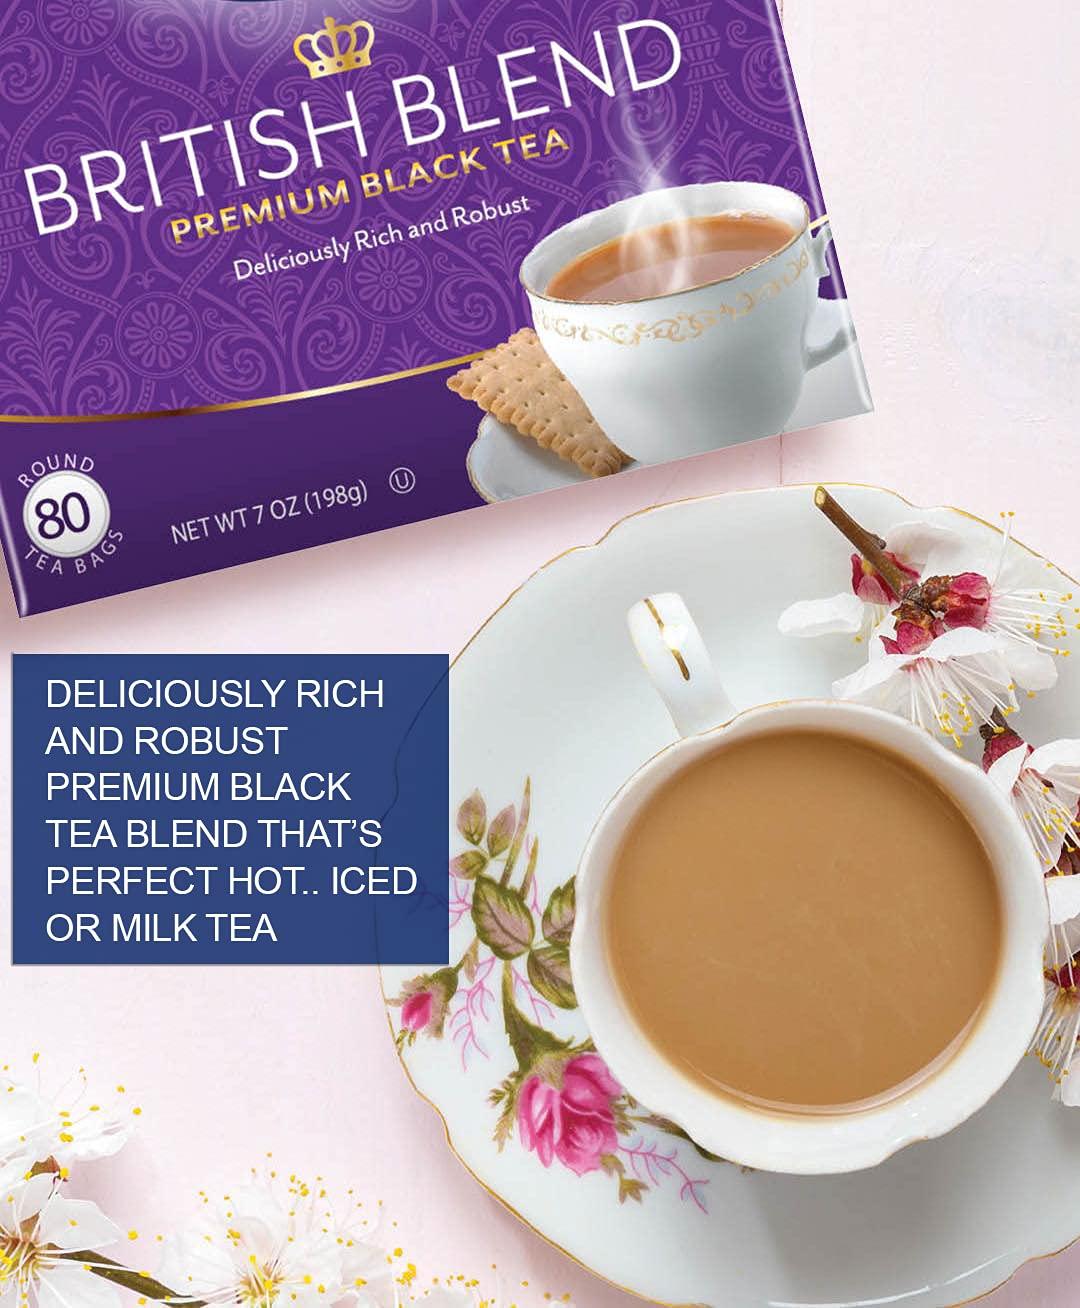 Tetley Premium Blend Teabags 102 Pack, Ceylon Tea, Tea, Drinks